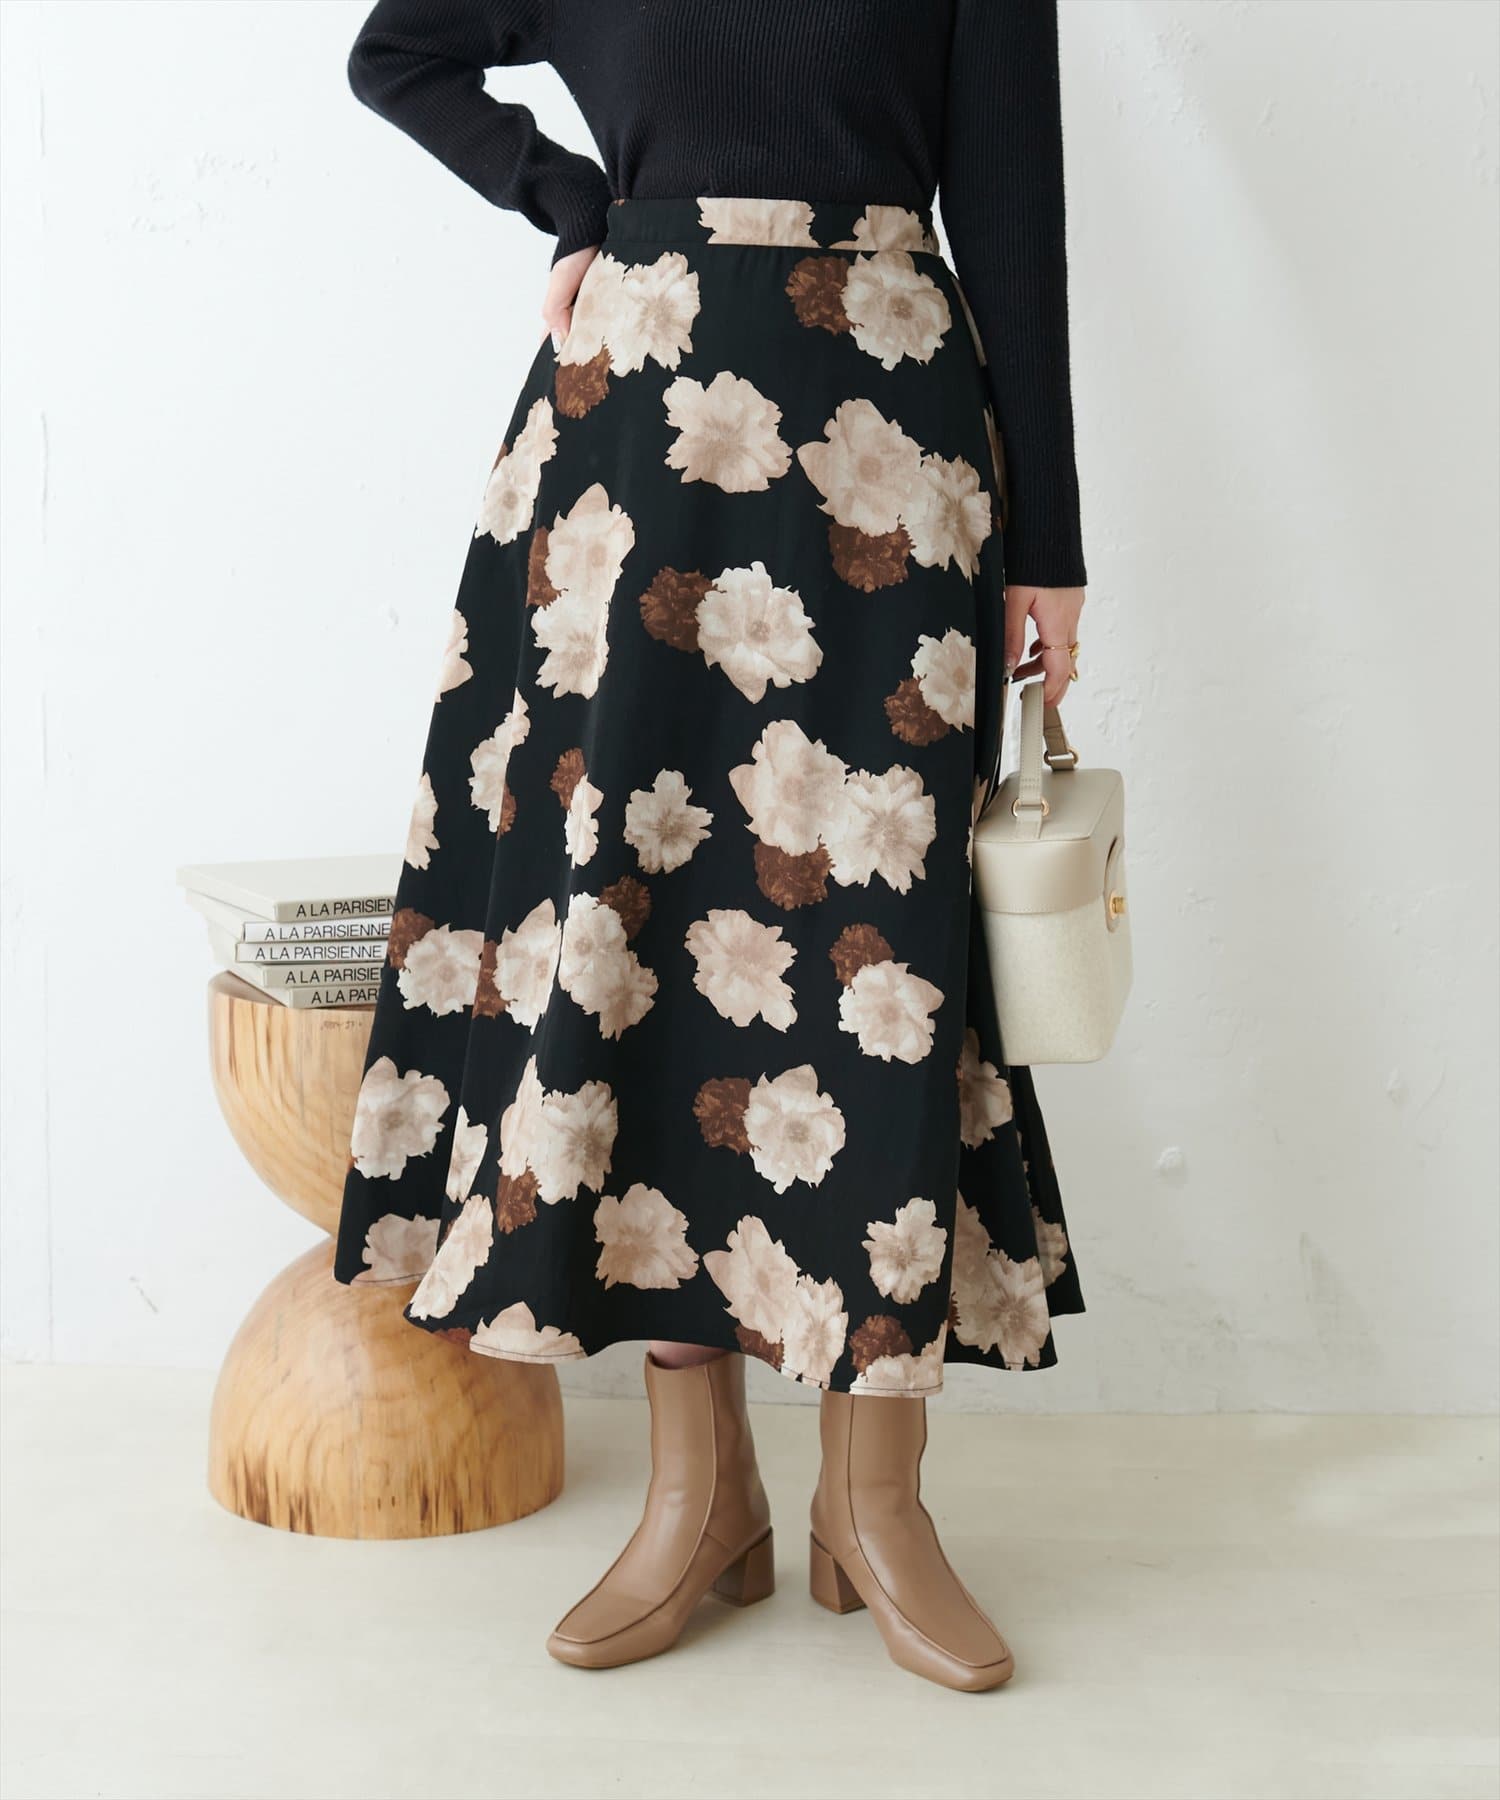 アソート柄フレアスカート natural couture(ナチュラルクチュール)レディース PAL CLOSET(パルクローゼット)  パルグループ公式ファッション通販サイト